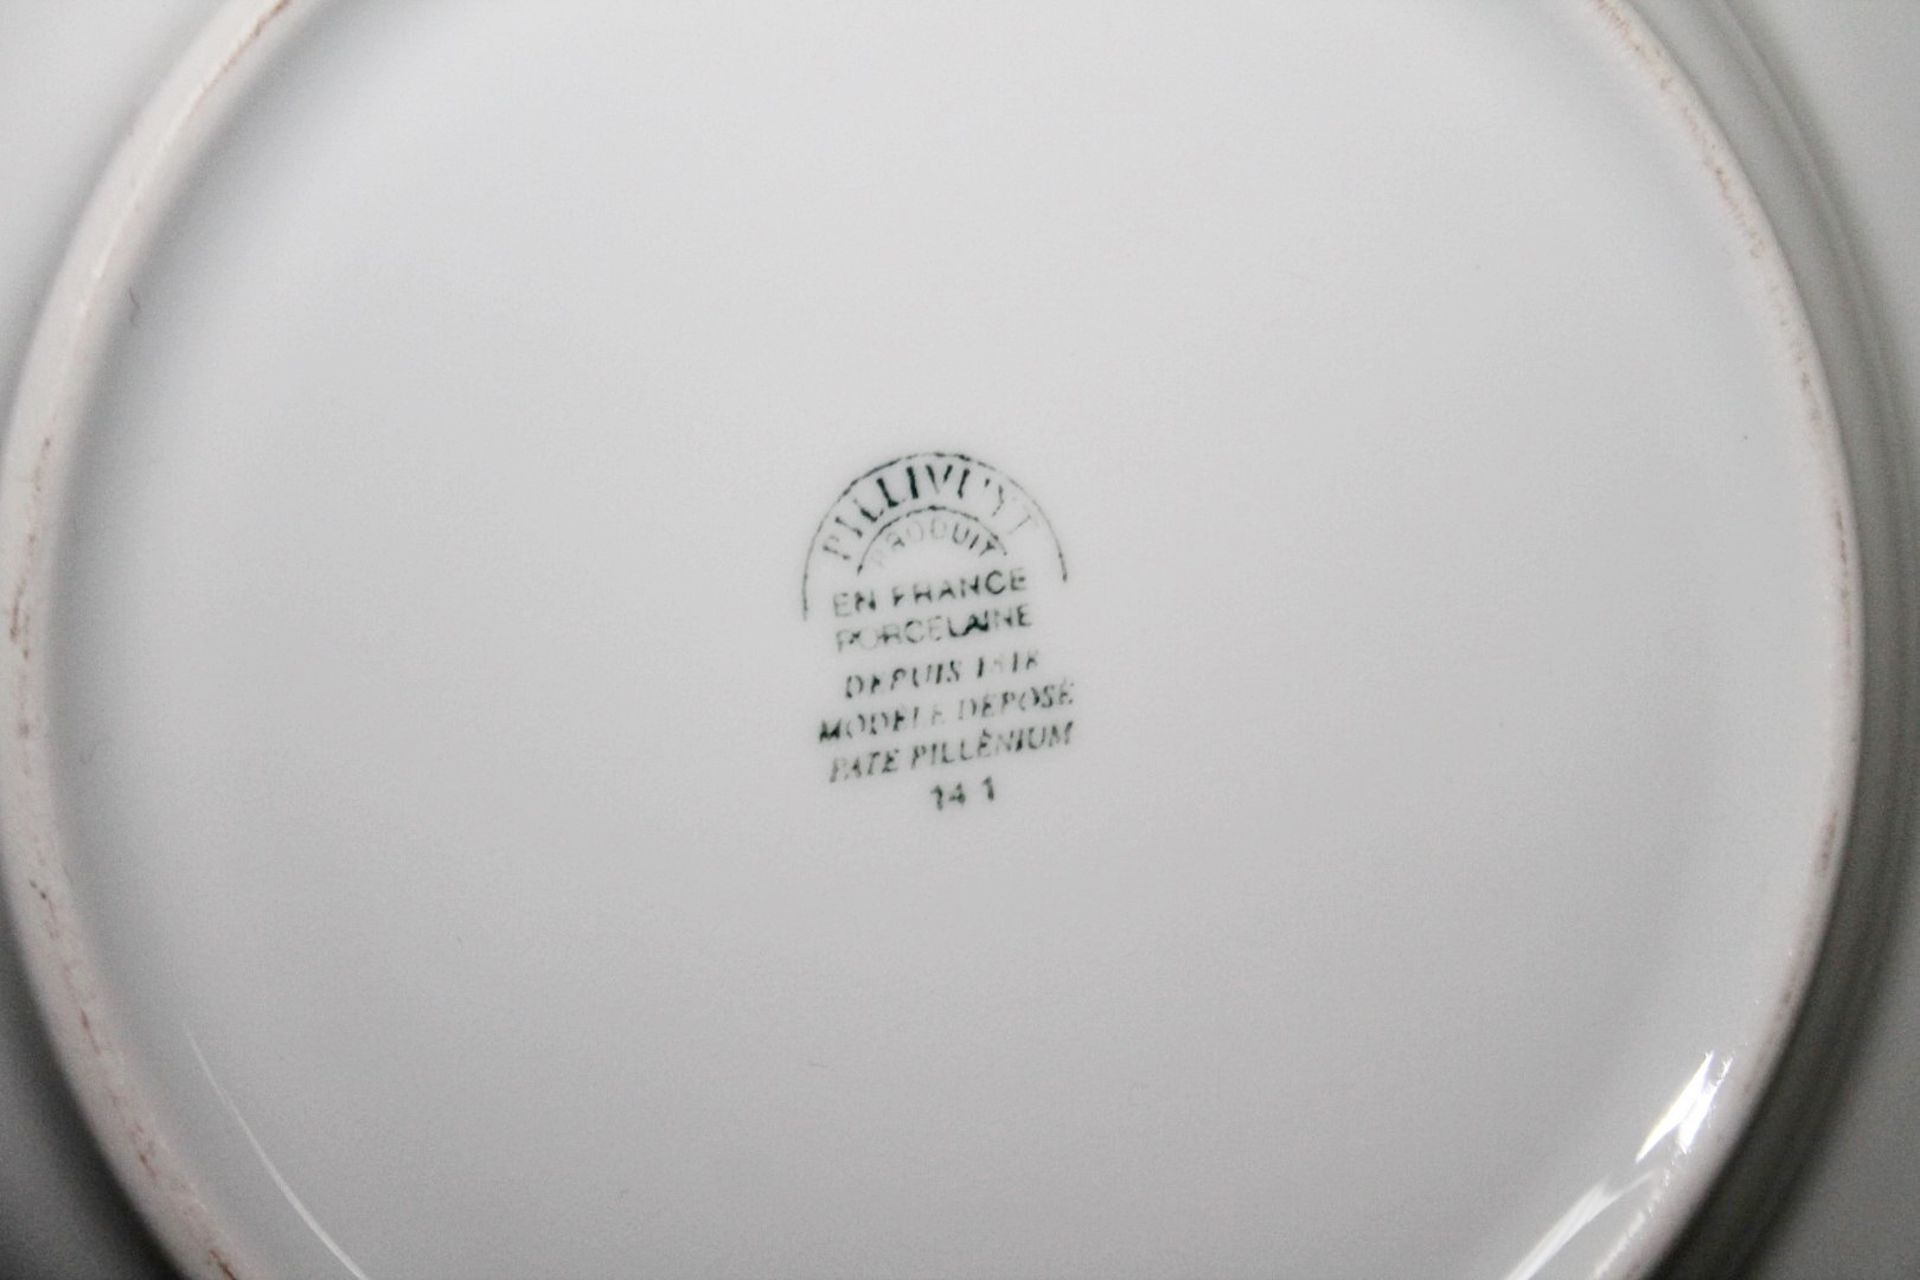 40 x PILLIVUYT Porcelain 21.7cm Small Commercial Porcelain Pasta / Soup Bowls With 'Famous Branding' - Image 3 of 5